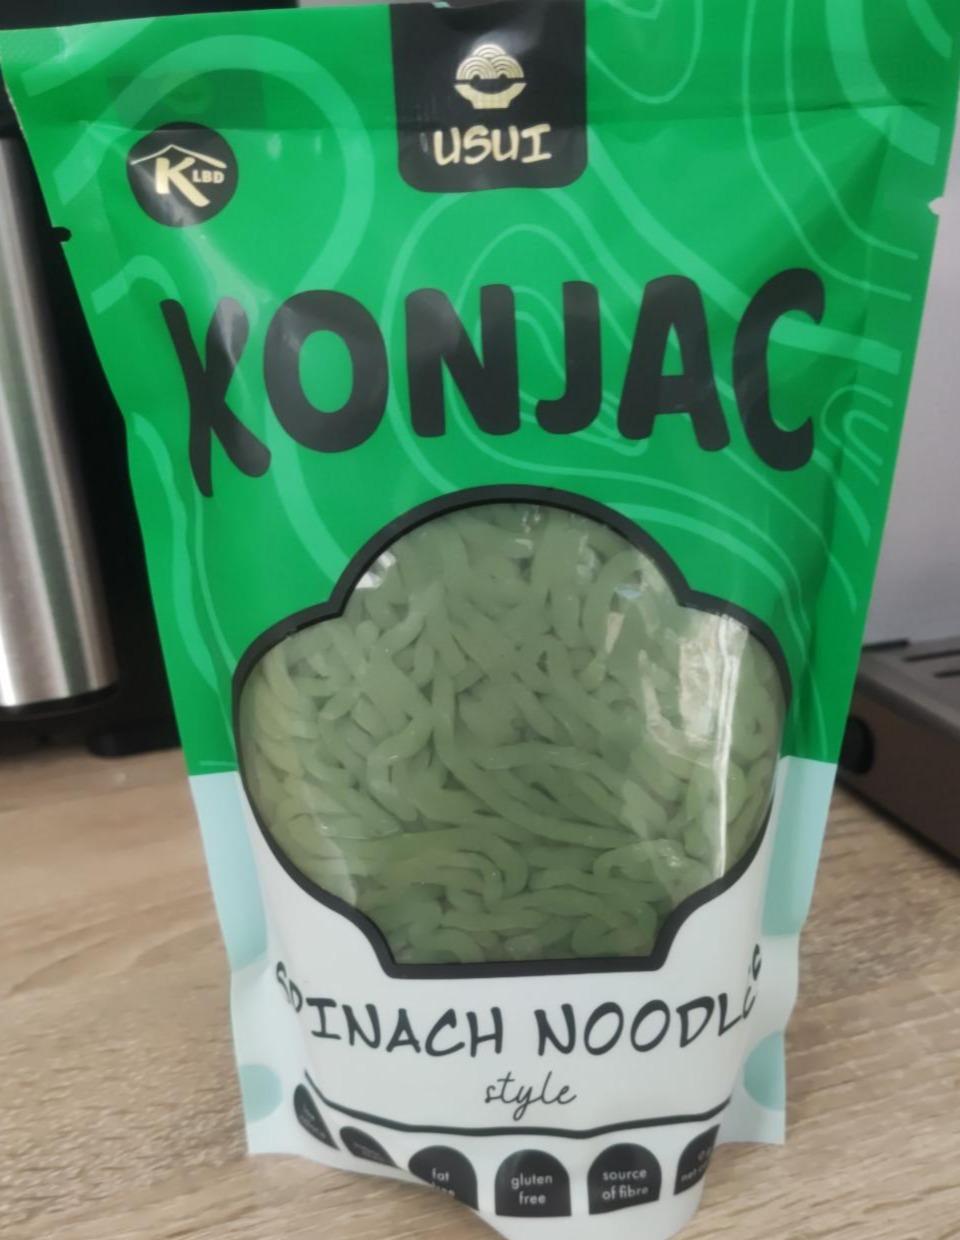 Fotografie - Konjac Spinach Noodles Usui